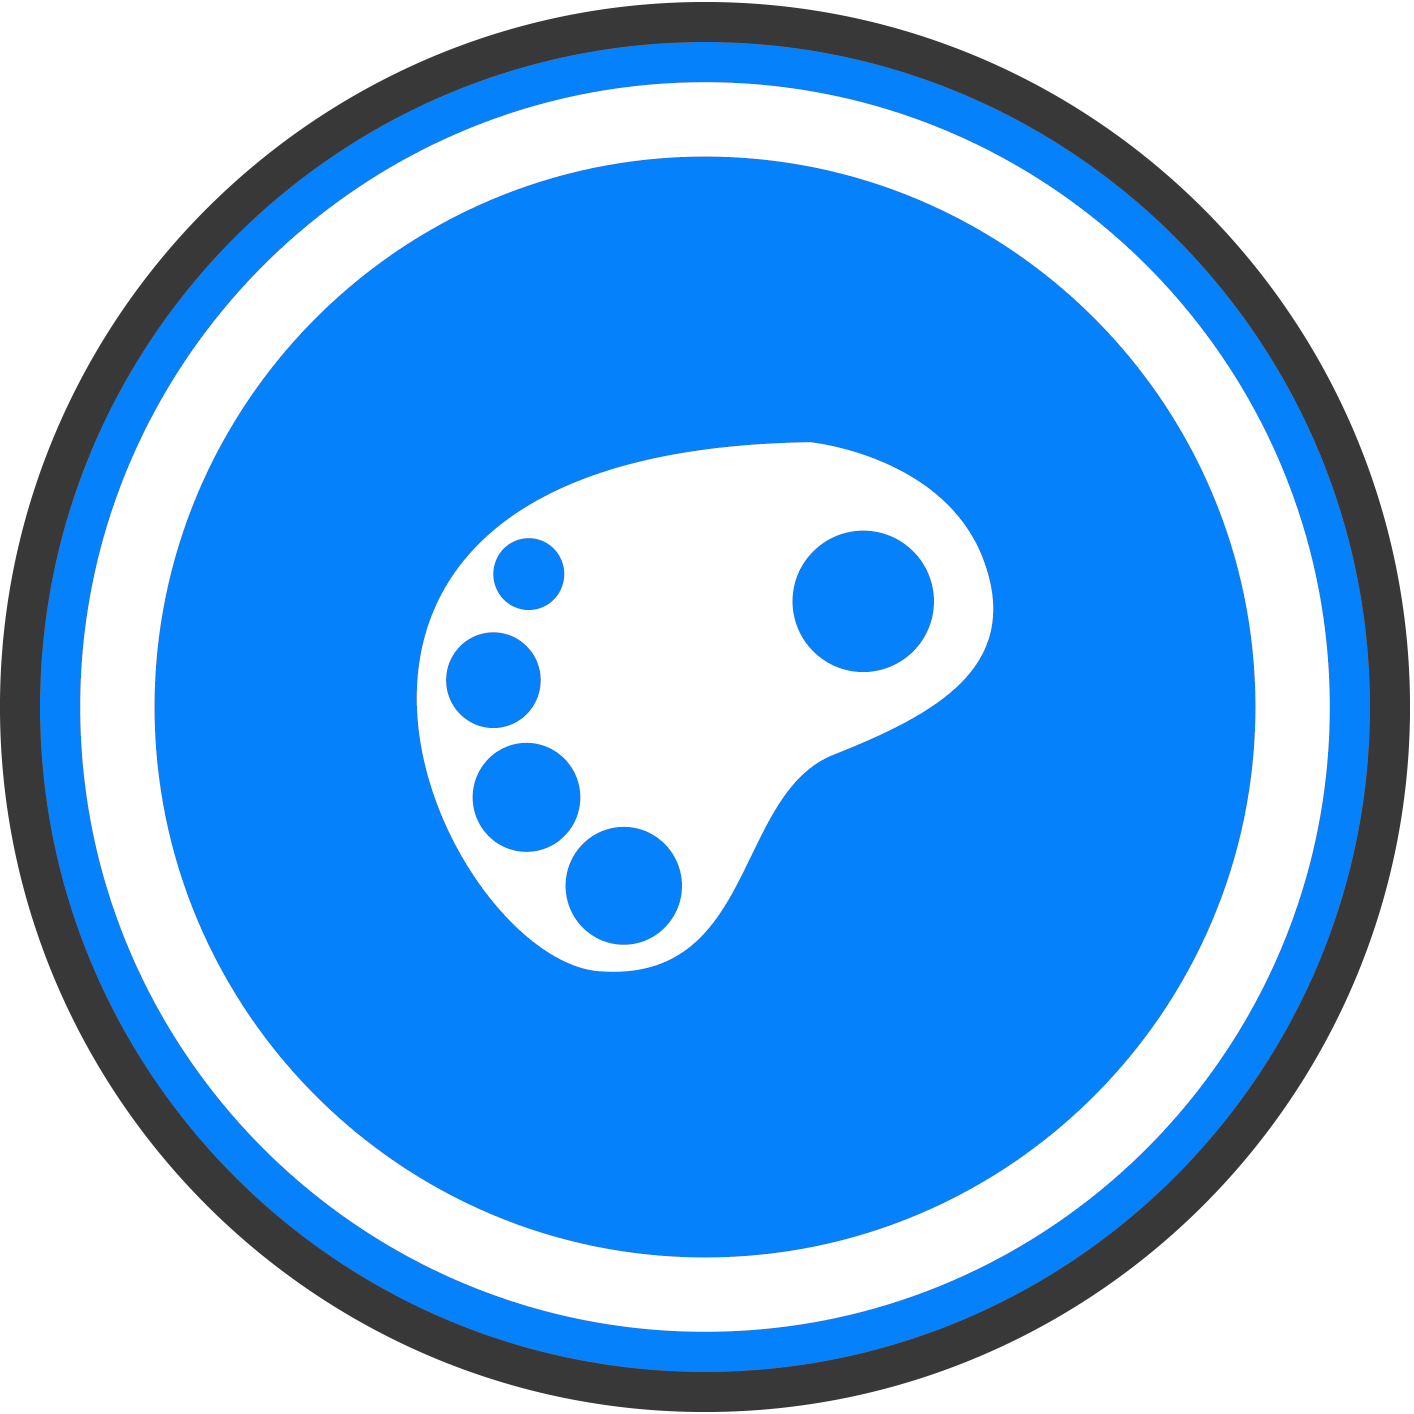 Logo Design - Circle (1414x1414)